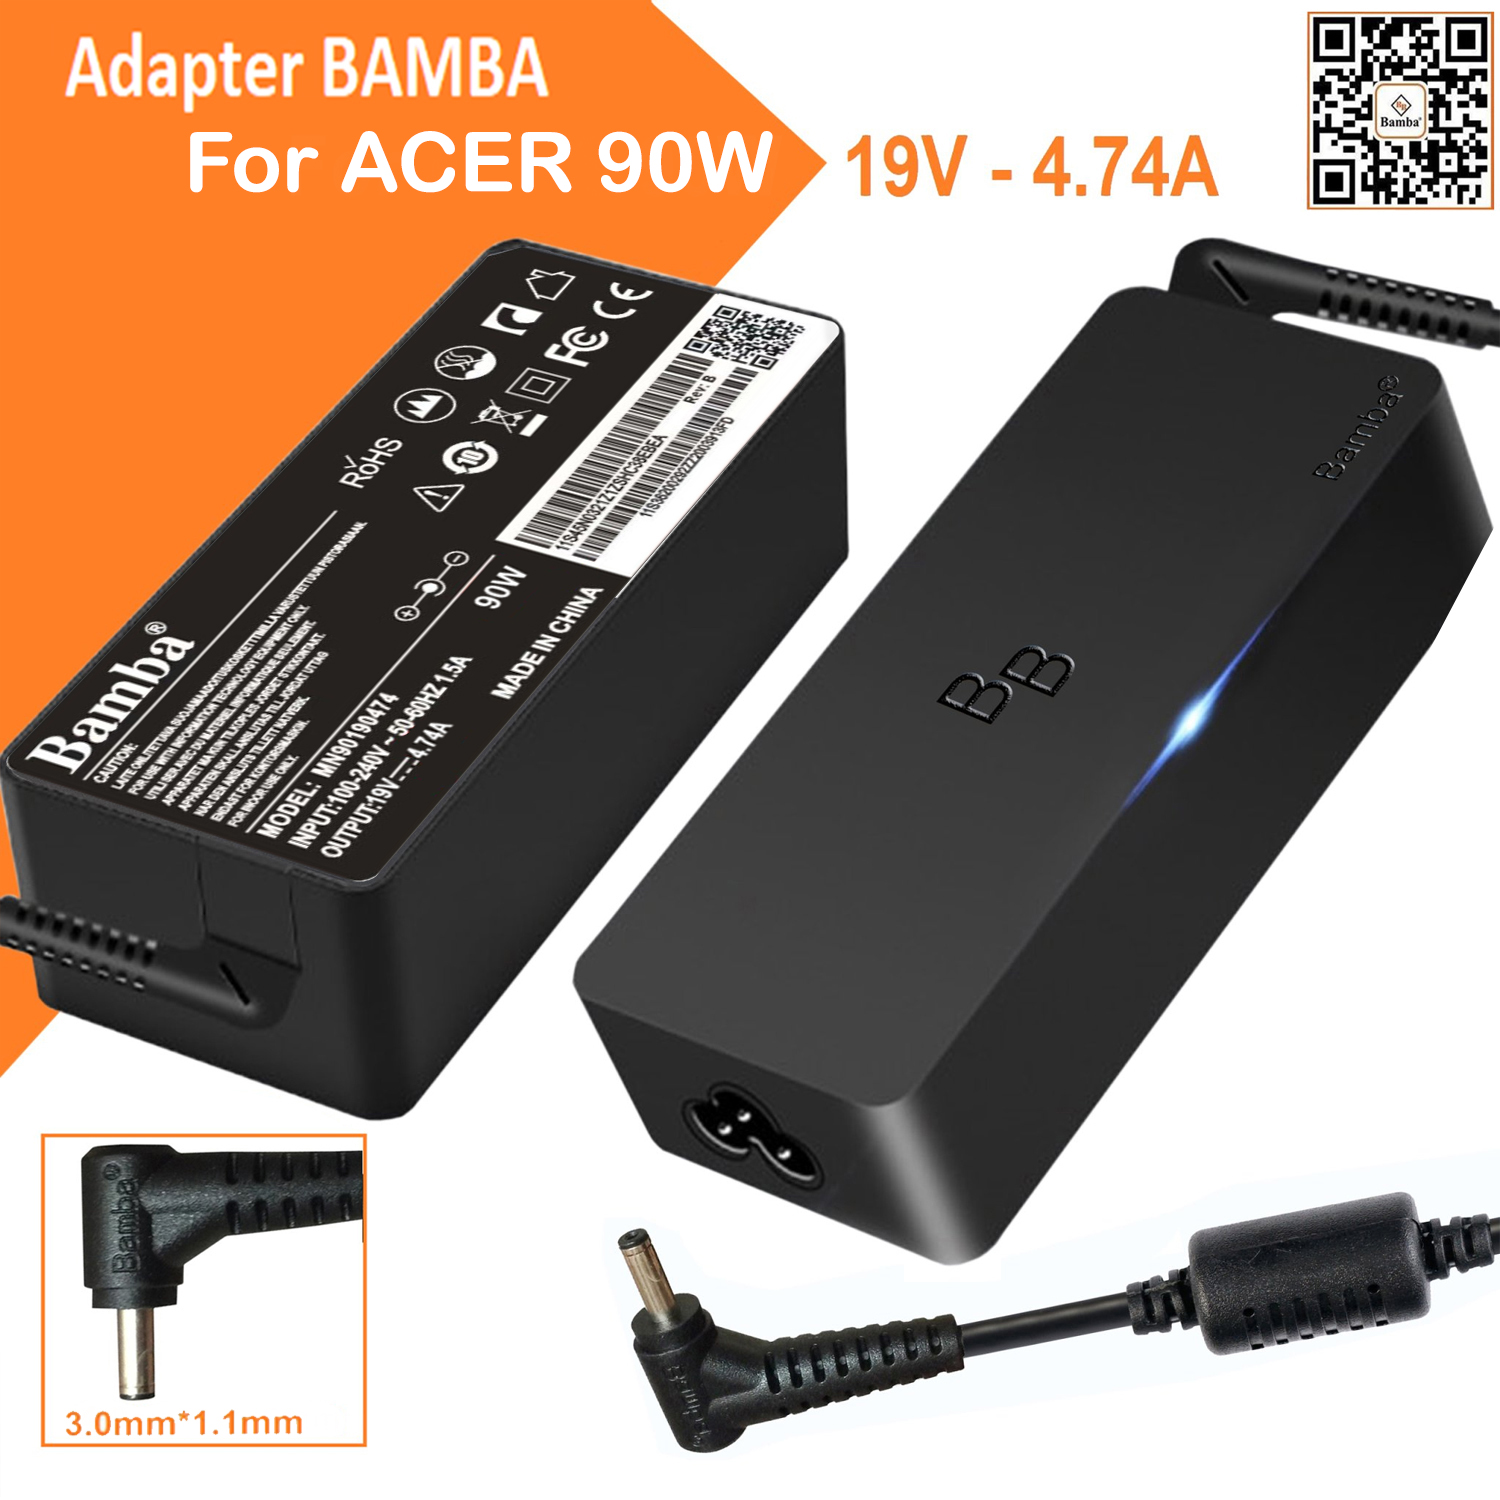 Cục Sạc Bamba  19V – 4.74A   (đầu nhỏ)   Cho Laptop Acer SF314-52,SF114-32,SF514-54T,SF314-54,A314-33,A314-41,A514-51,A514-51G,A514-51K,A514-51KG